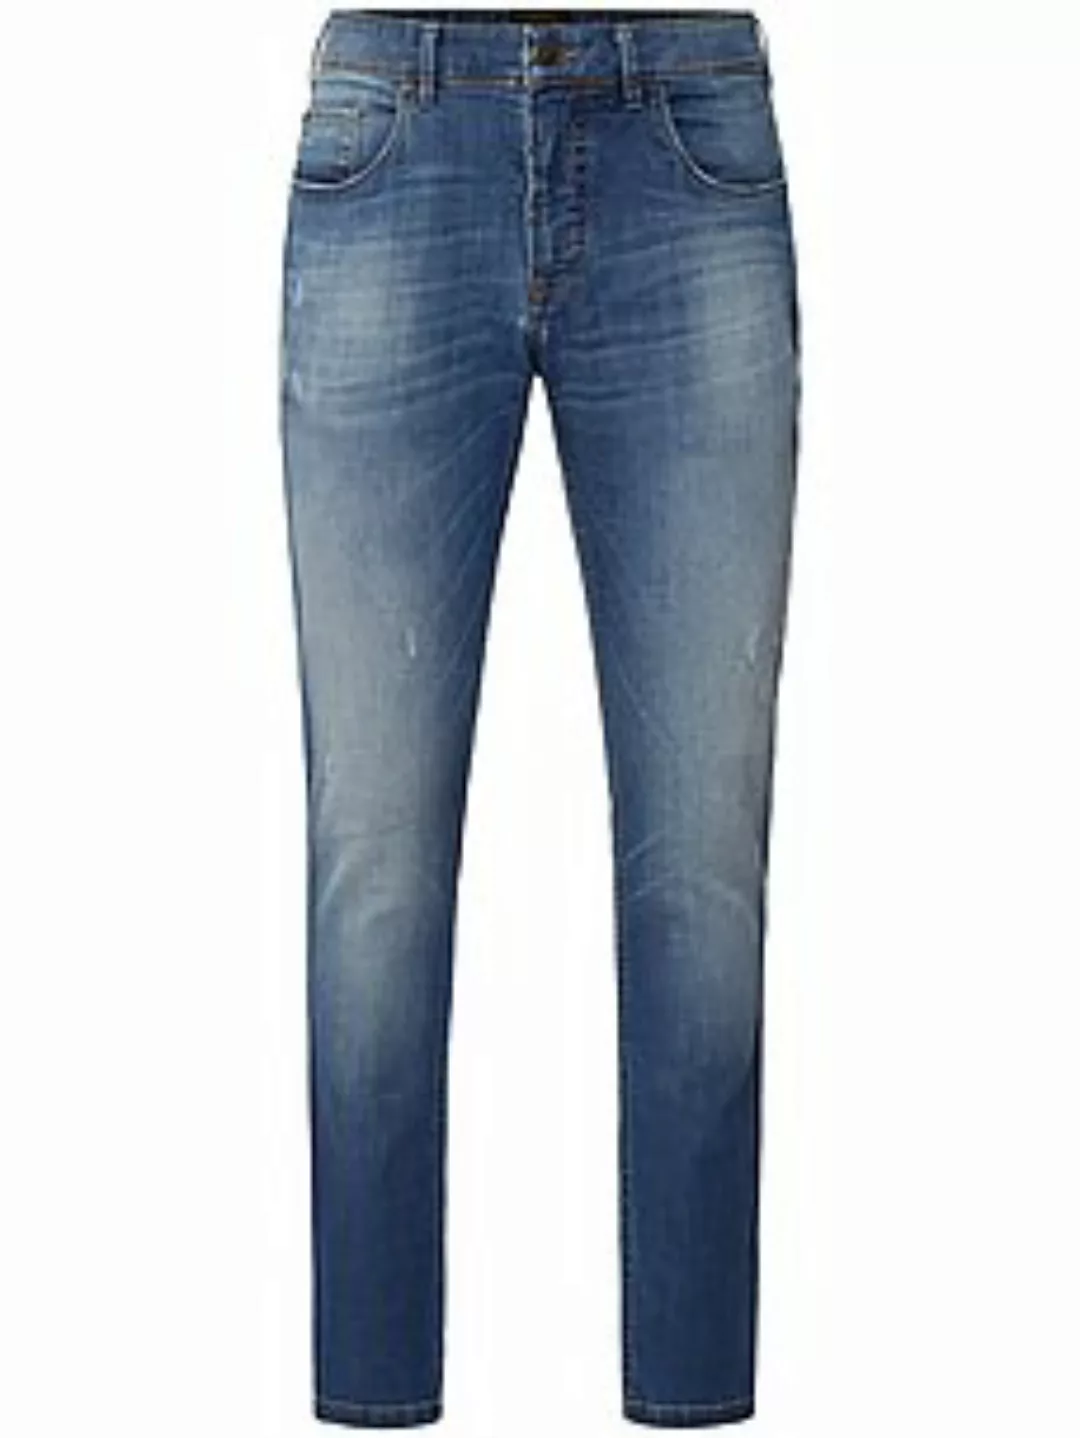 Jeans Modell Saxton, Inch 30 g1920 denim günstig online kaufen